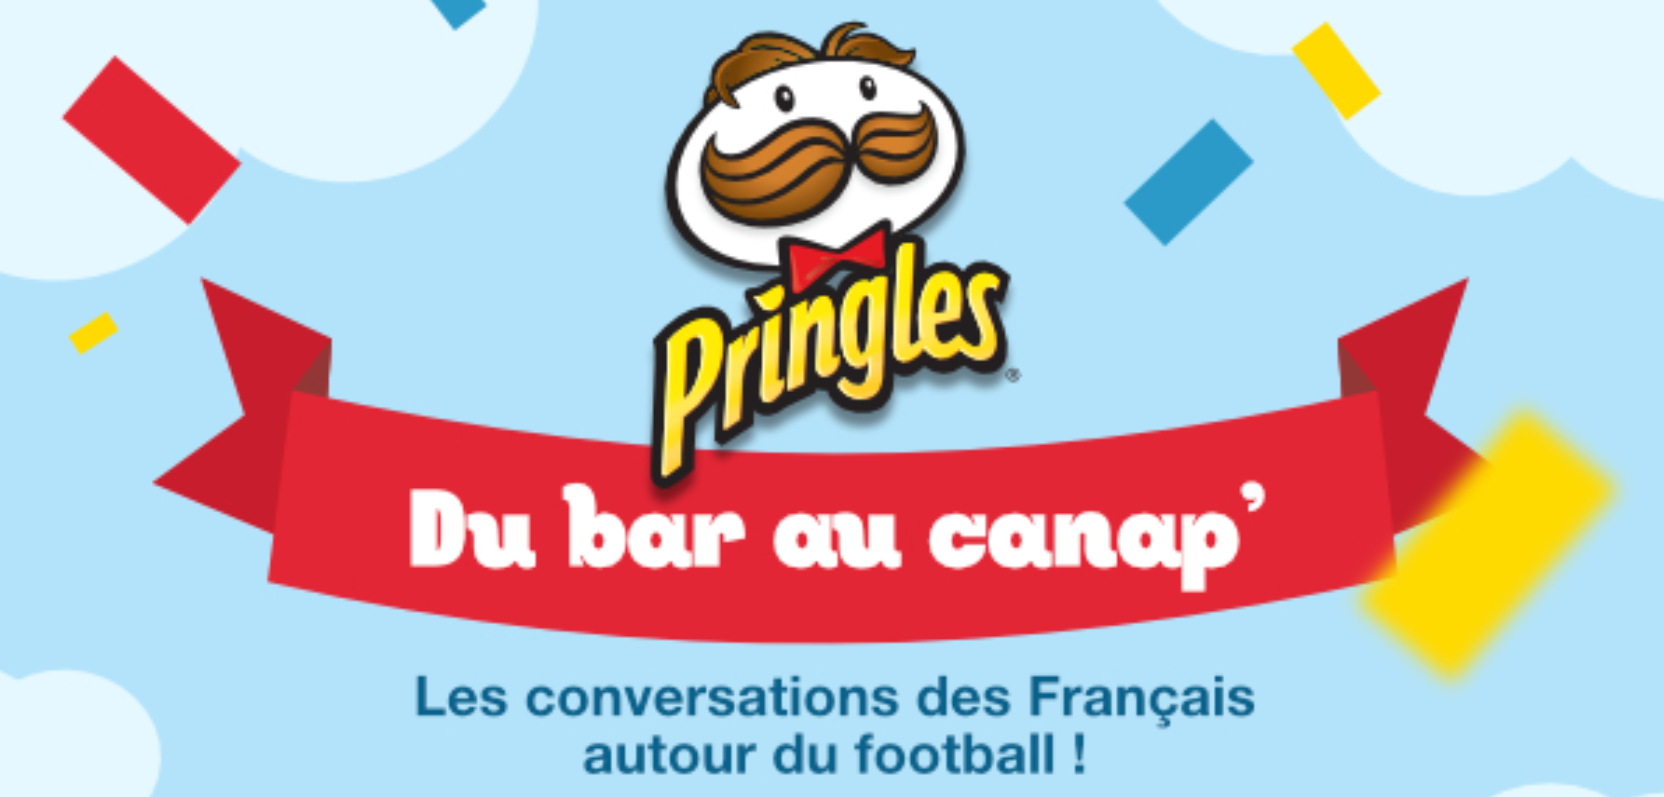 football-française-pringles